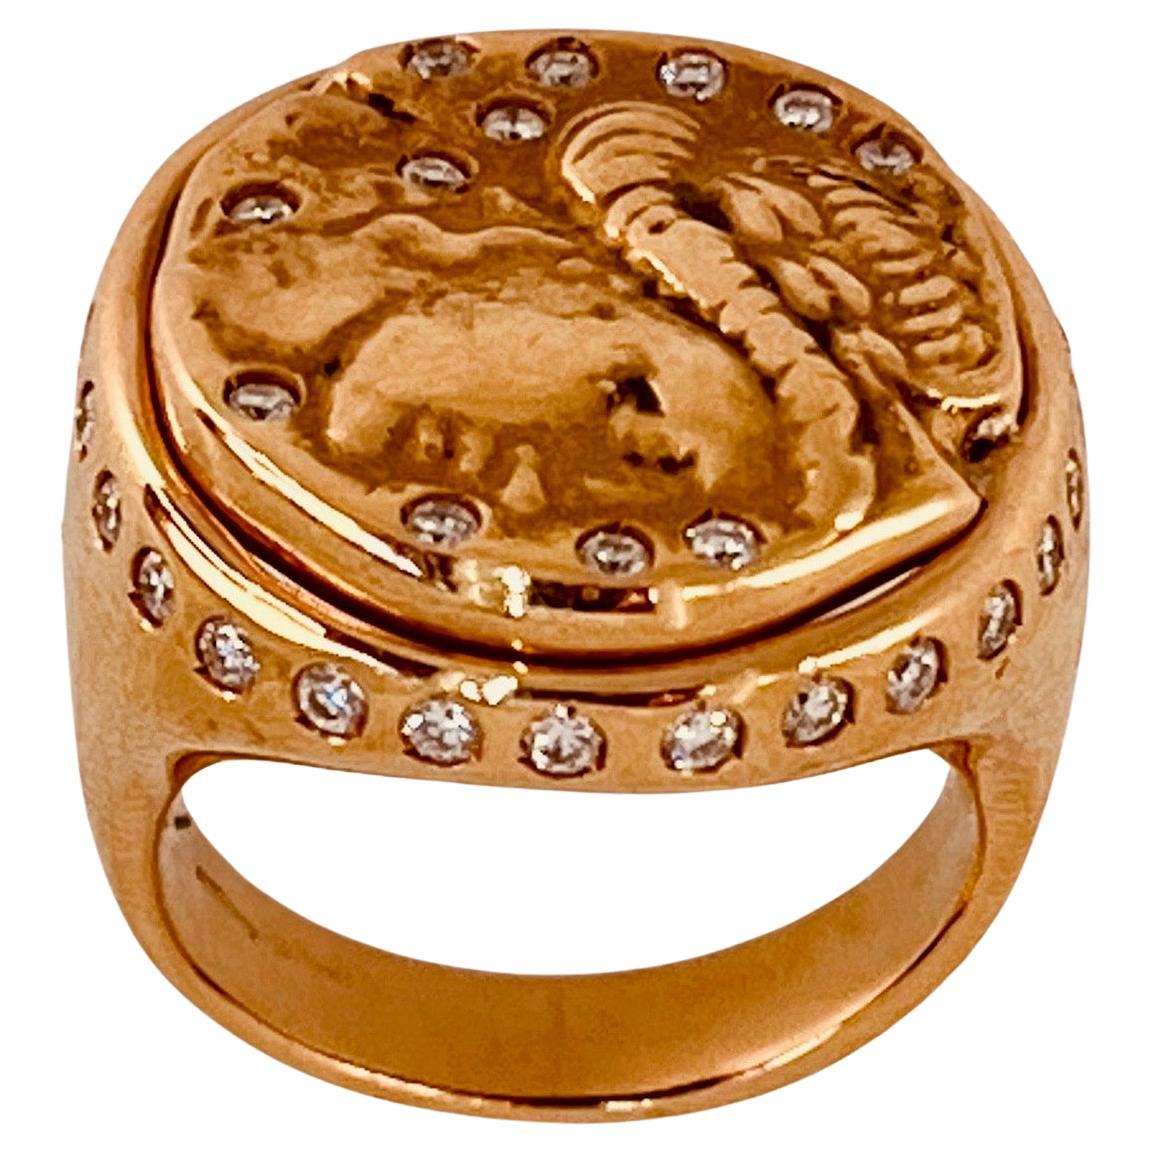 Gavello Ring aus 18-karätigem Gold und Diamanten, mit einer Abbildung von Alexander dem Großen in der Mitte, mit zufällig gesetzten Diamanten und einer Reihe von Diamanten entlang der Lünette. Siegelring, 21 mm Durchmesser. Gewicht: 15,8 Gramm.